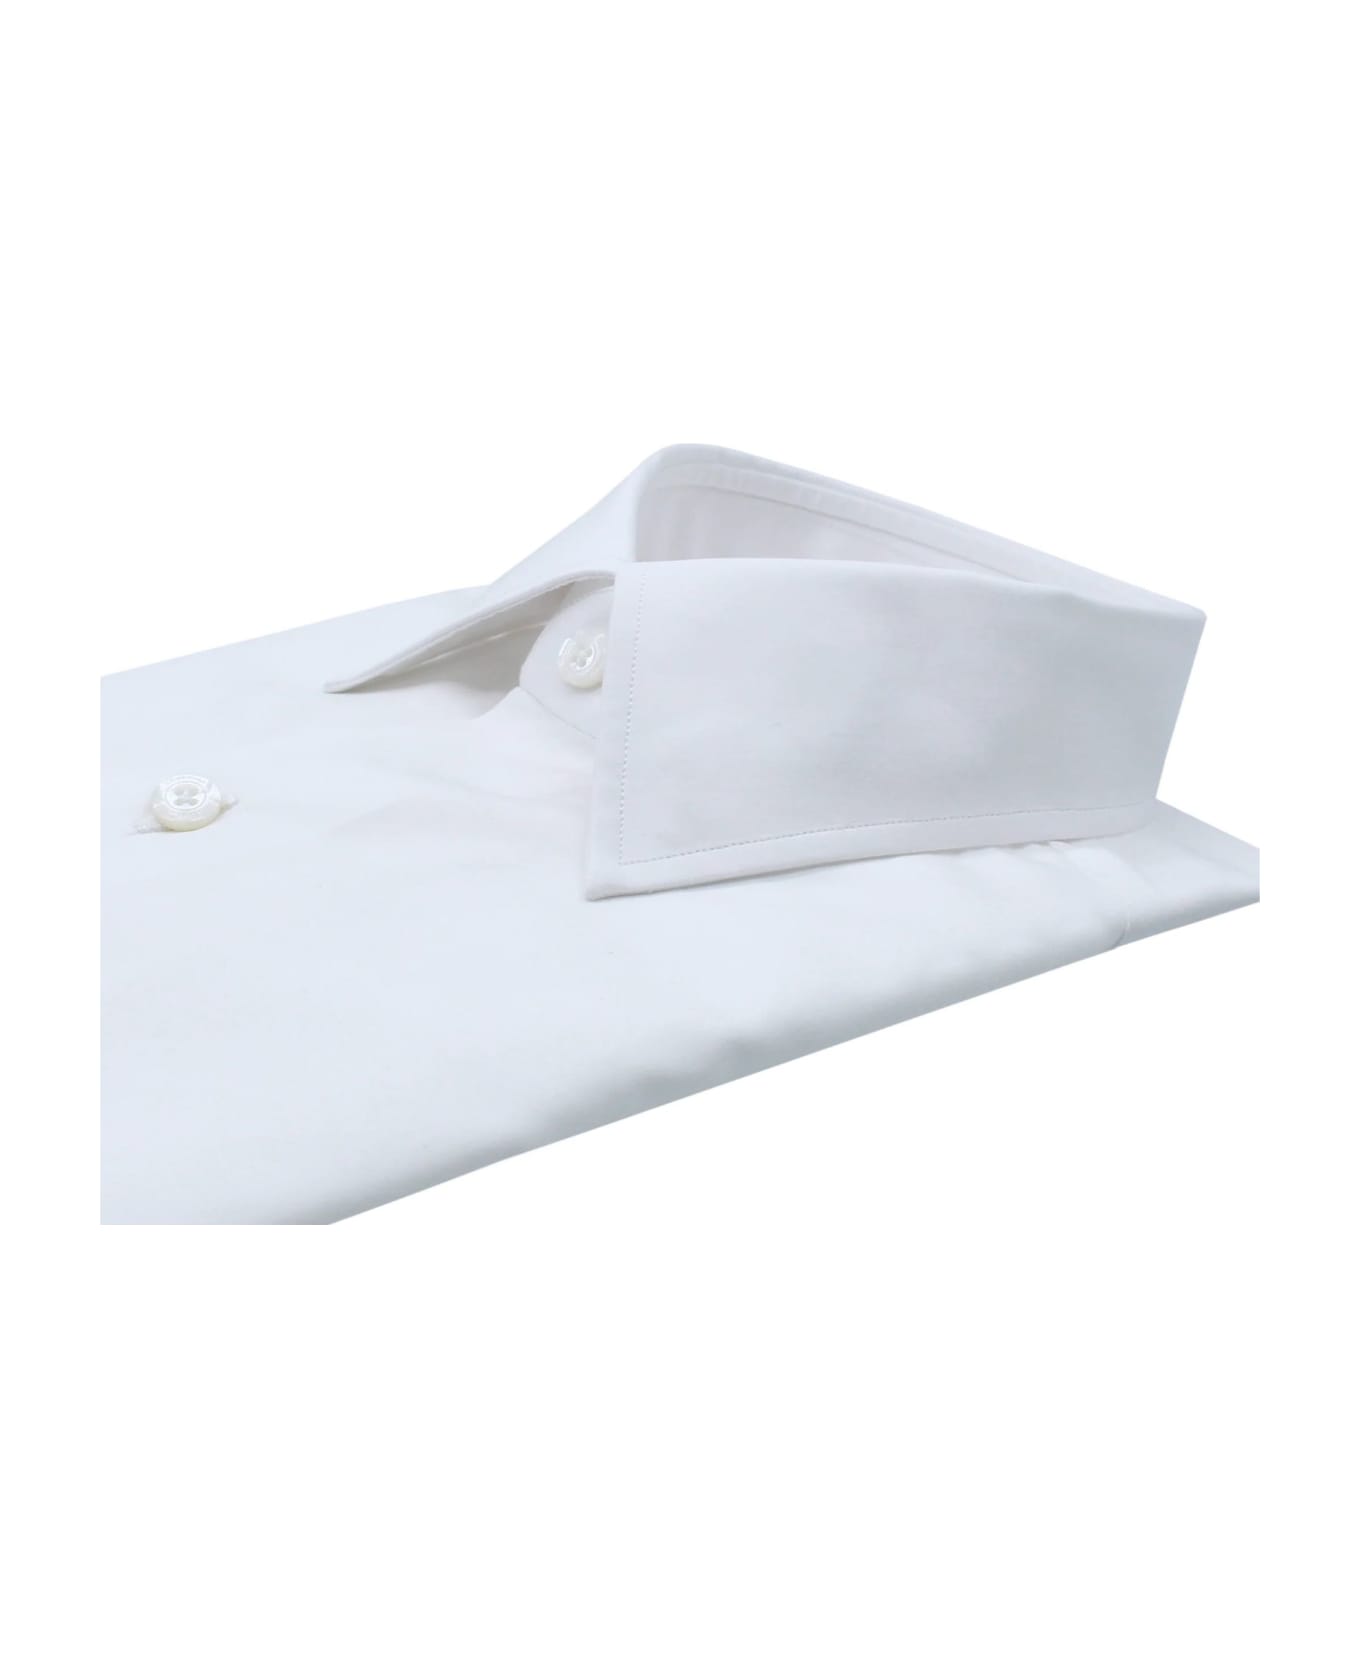 Finamore White Cotton Shirt - White